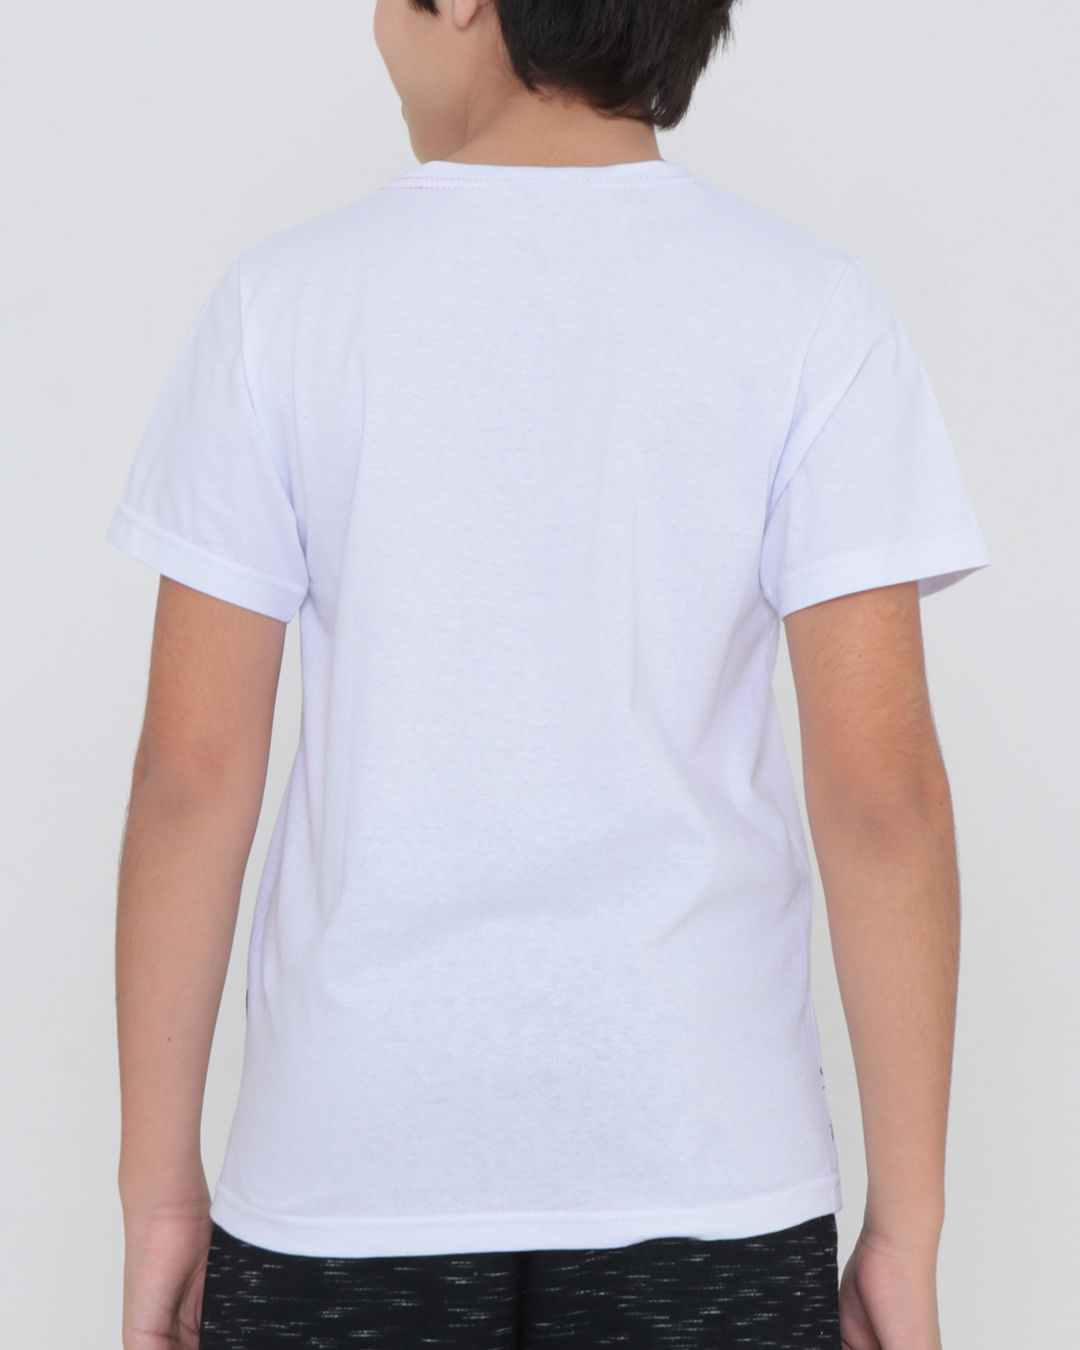 Camiseta-T5004-Mc-M1014---Branco